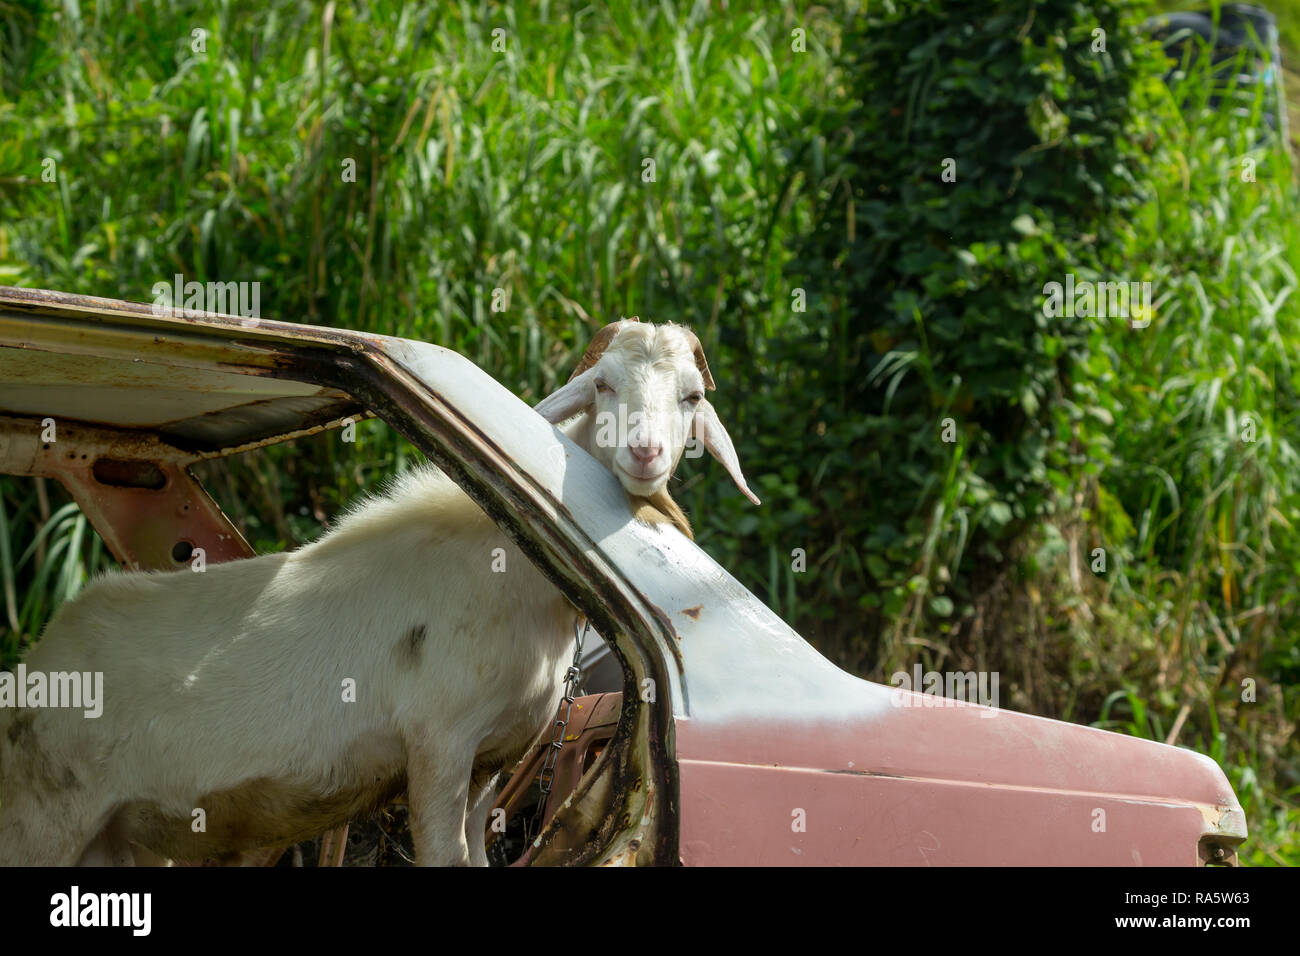 Tobago, Karibik, West Indies. Weiße, männliche Ziege oder Bock auf eine Kette stand in einem alten, verlassenen, rostigen Auto ohne Türen oder Fenster. Komische Bild Stockfoto